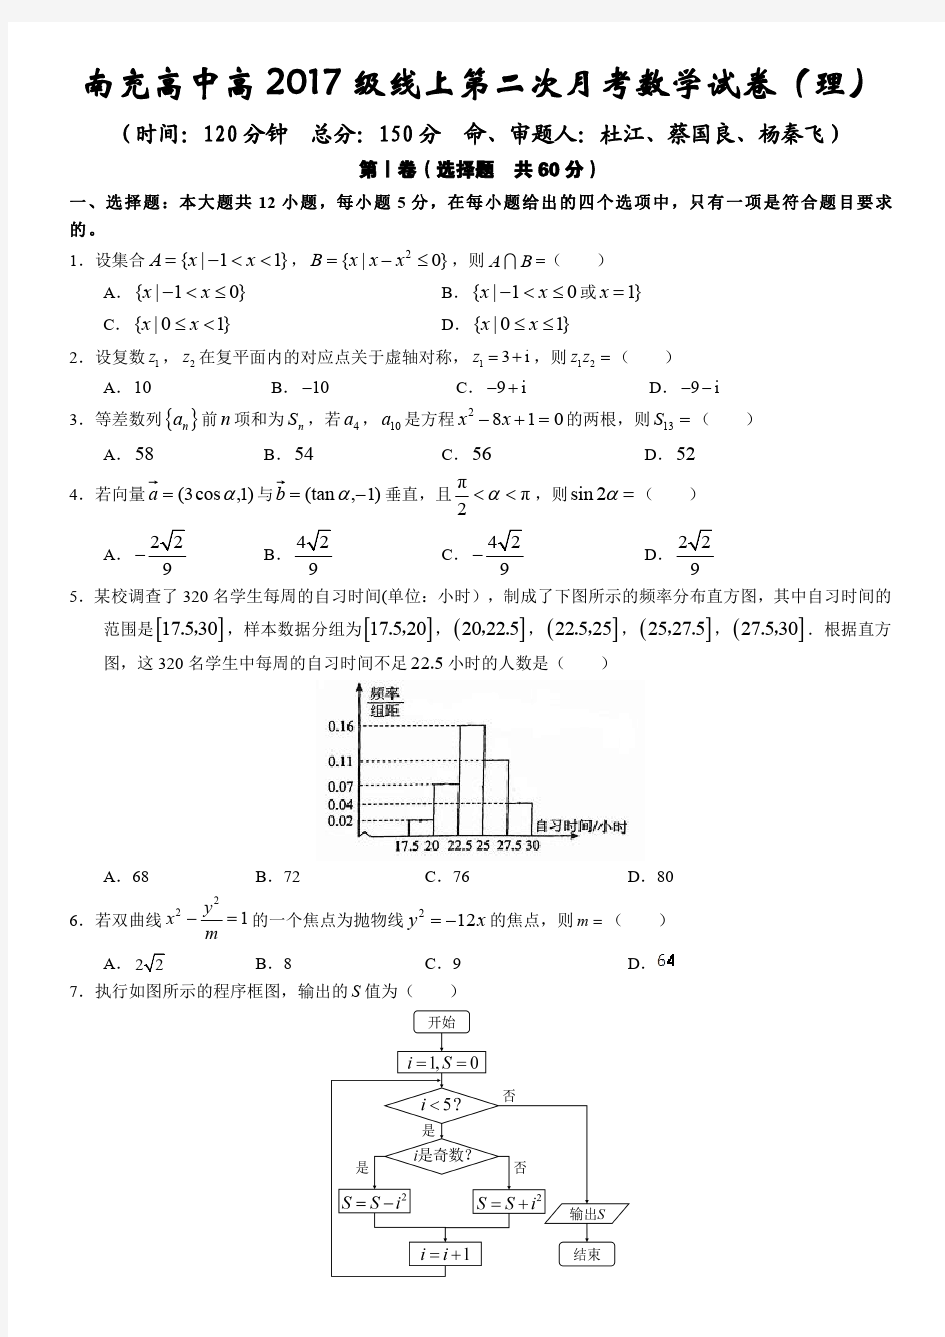 四川省南充高中高2017级3月网 上考试数学理科试卷